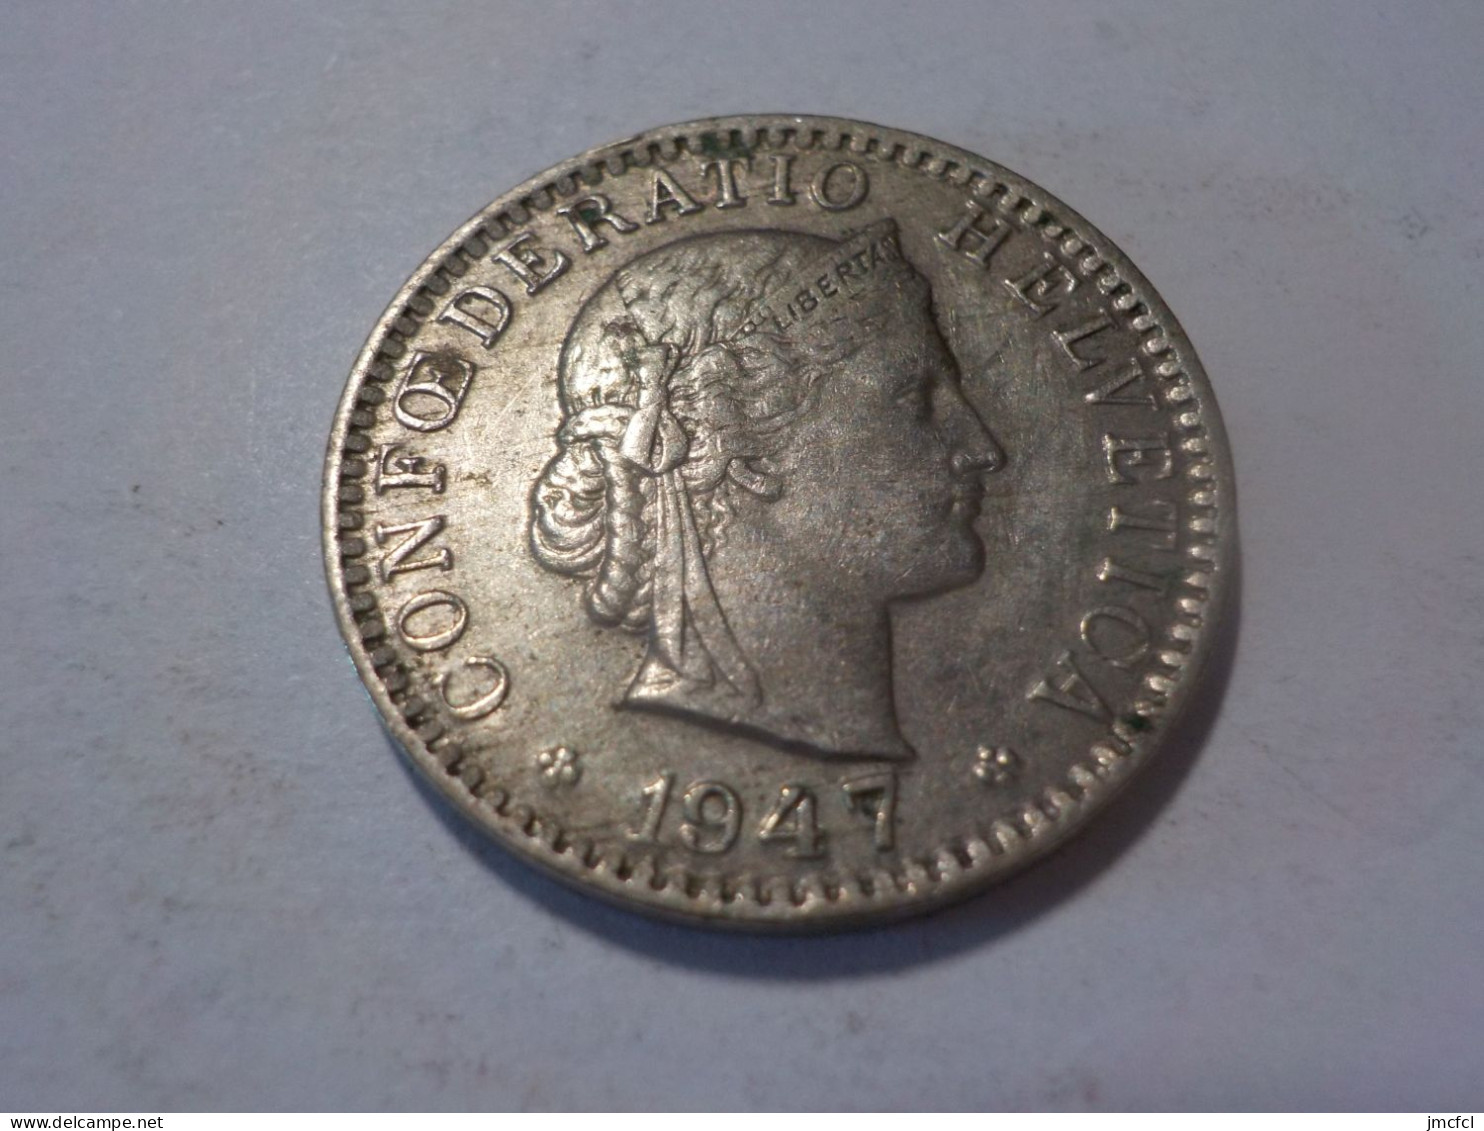 SUISSE  20 Centimes  1947 - 20 Centimes / Rappen